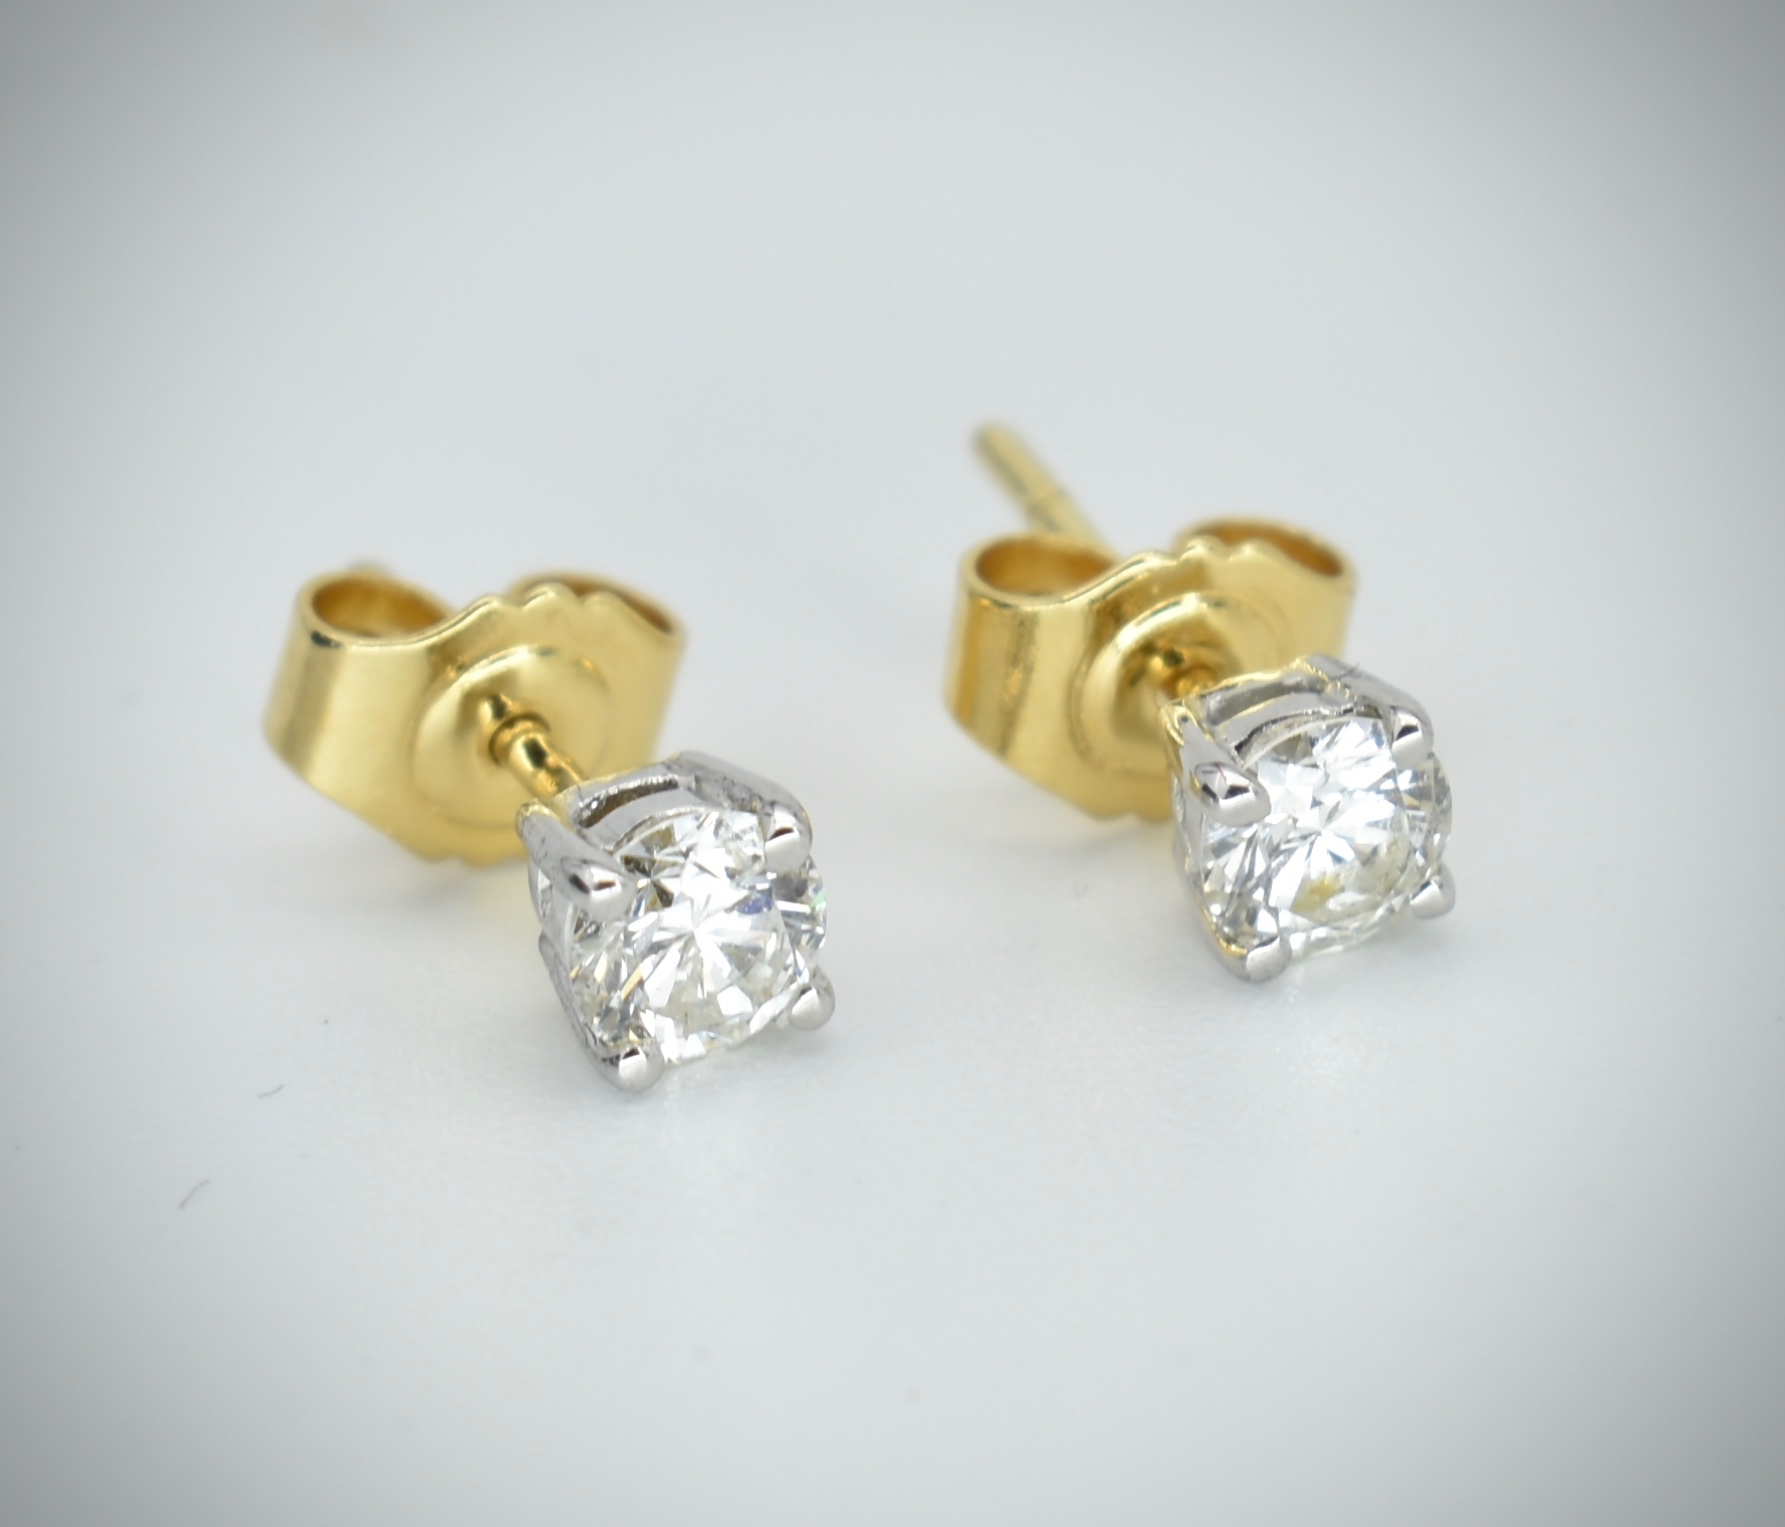 Pair of 18ct Gold & Diamond Stud Earrings